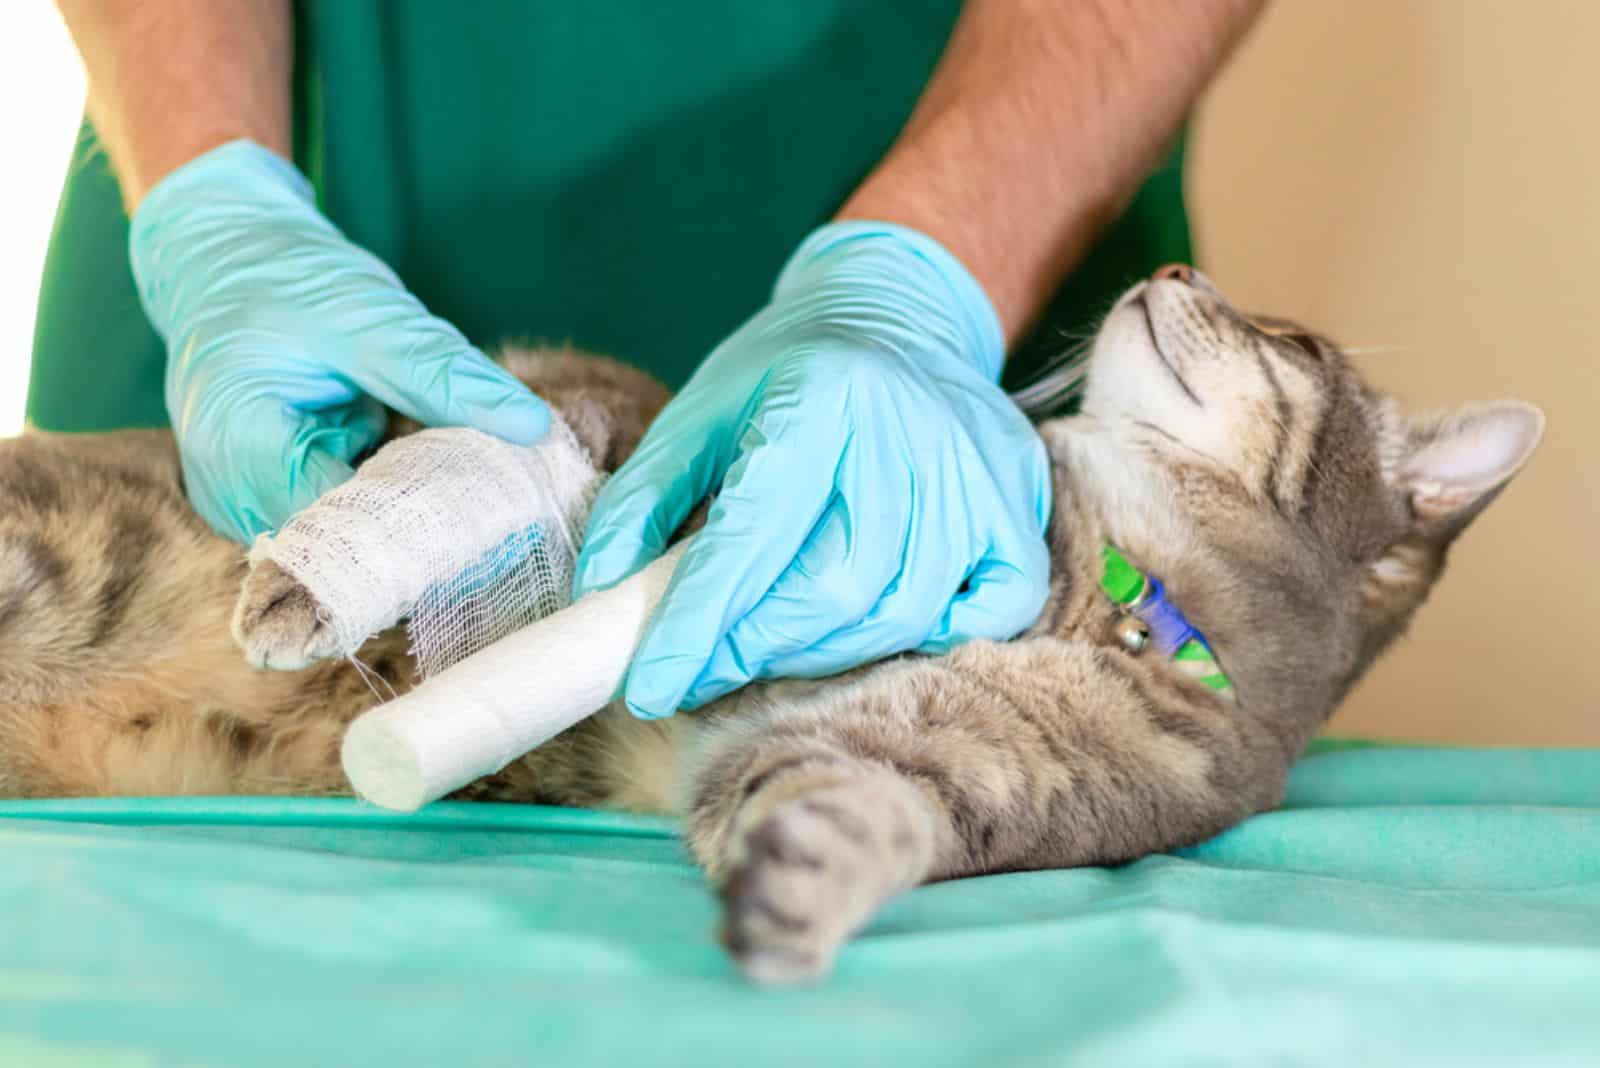 Sad grey cat with broken leg at vet surgery.